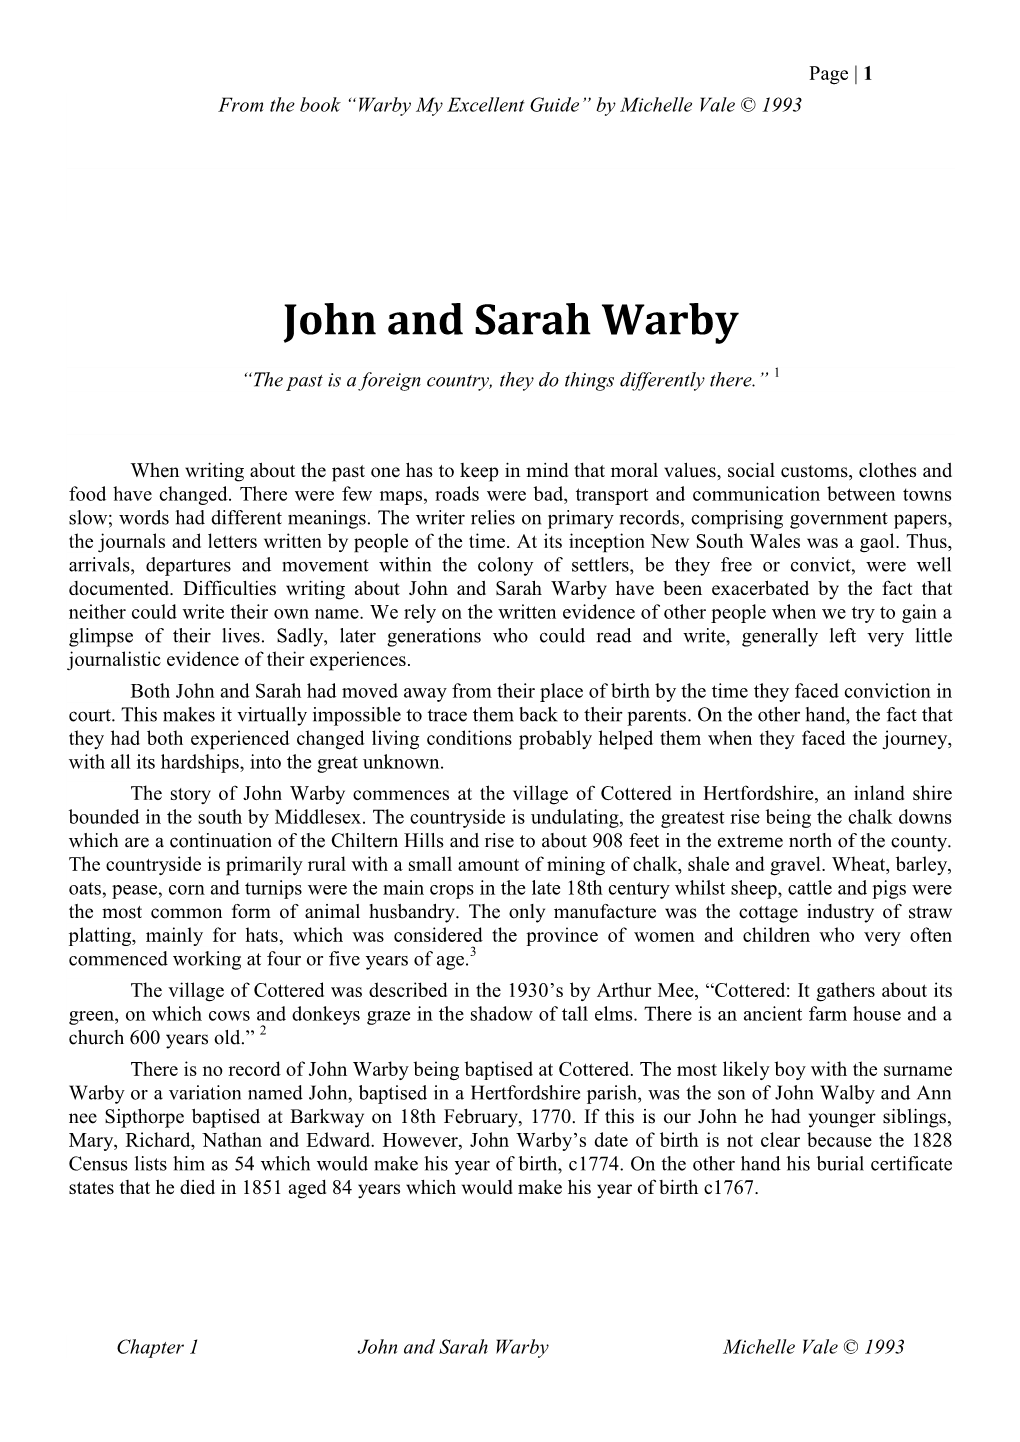 John and Sarah Warby